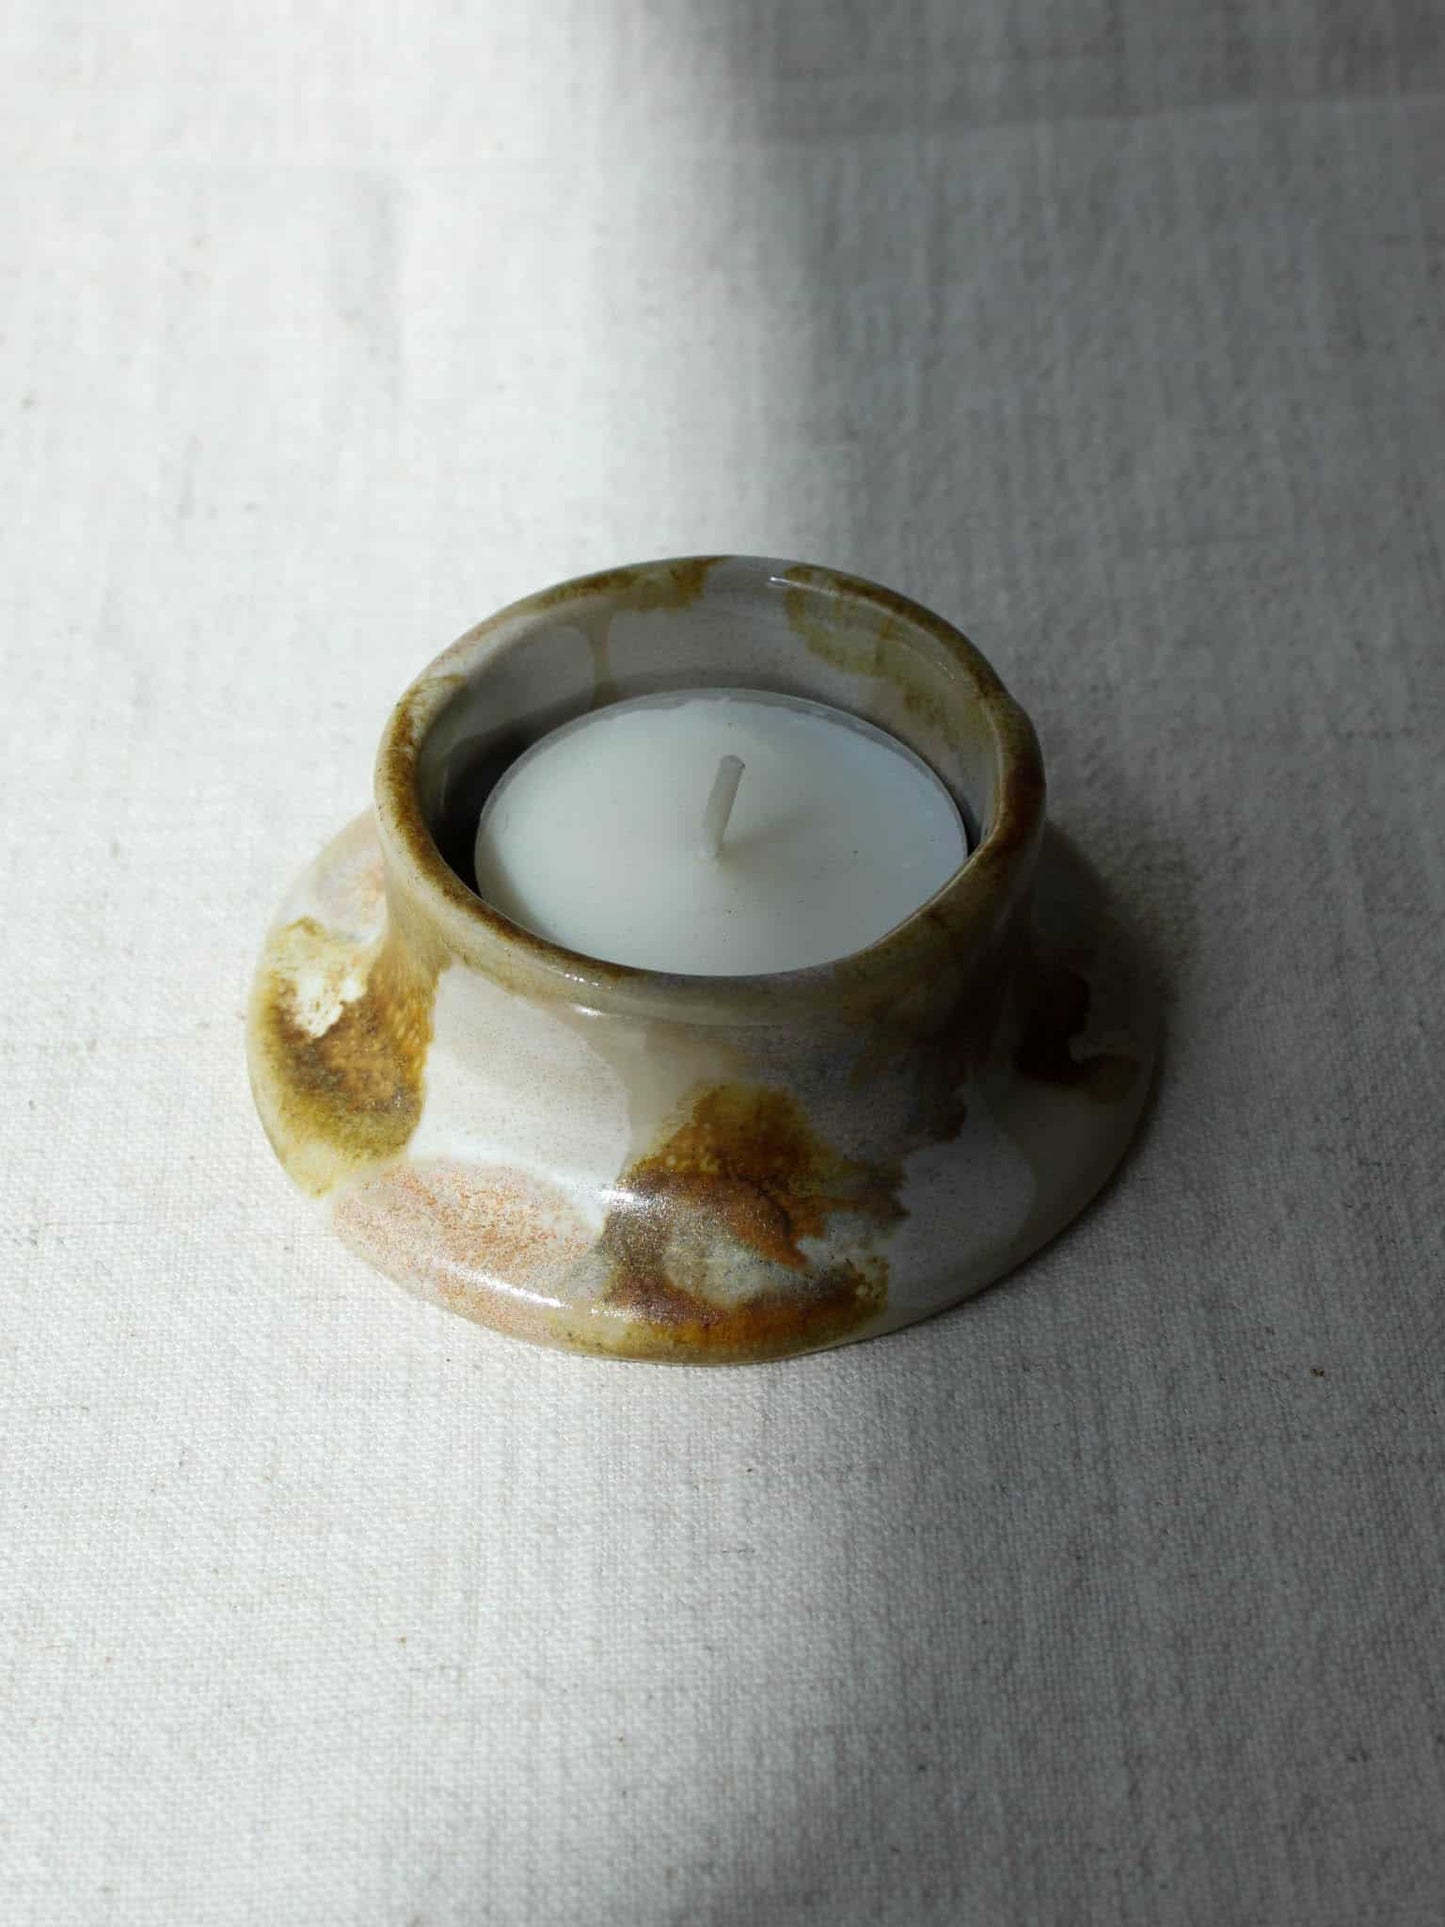 Sonder-Edition Teelichthalter in marmorierter Creme